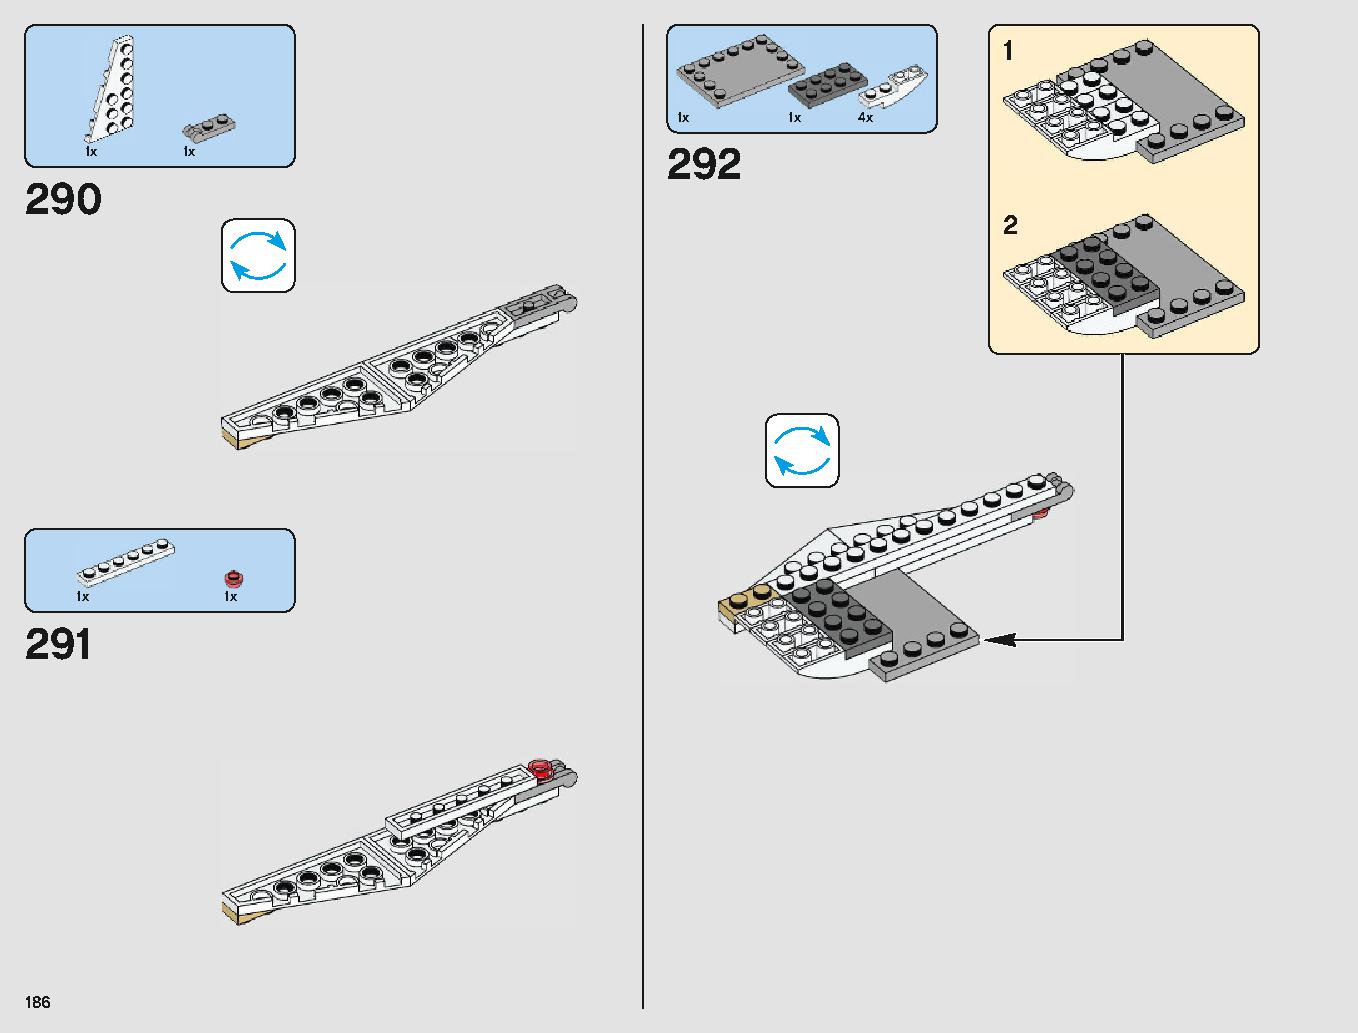 ミレニアム・ファルコン 75212 レゴの商品情報 レゴの説明書・組立方法 186 page